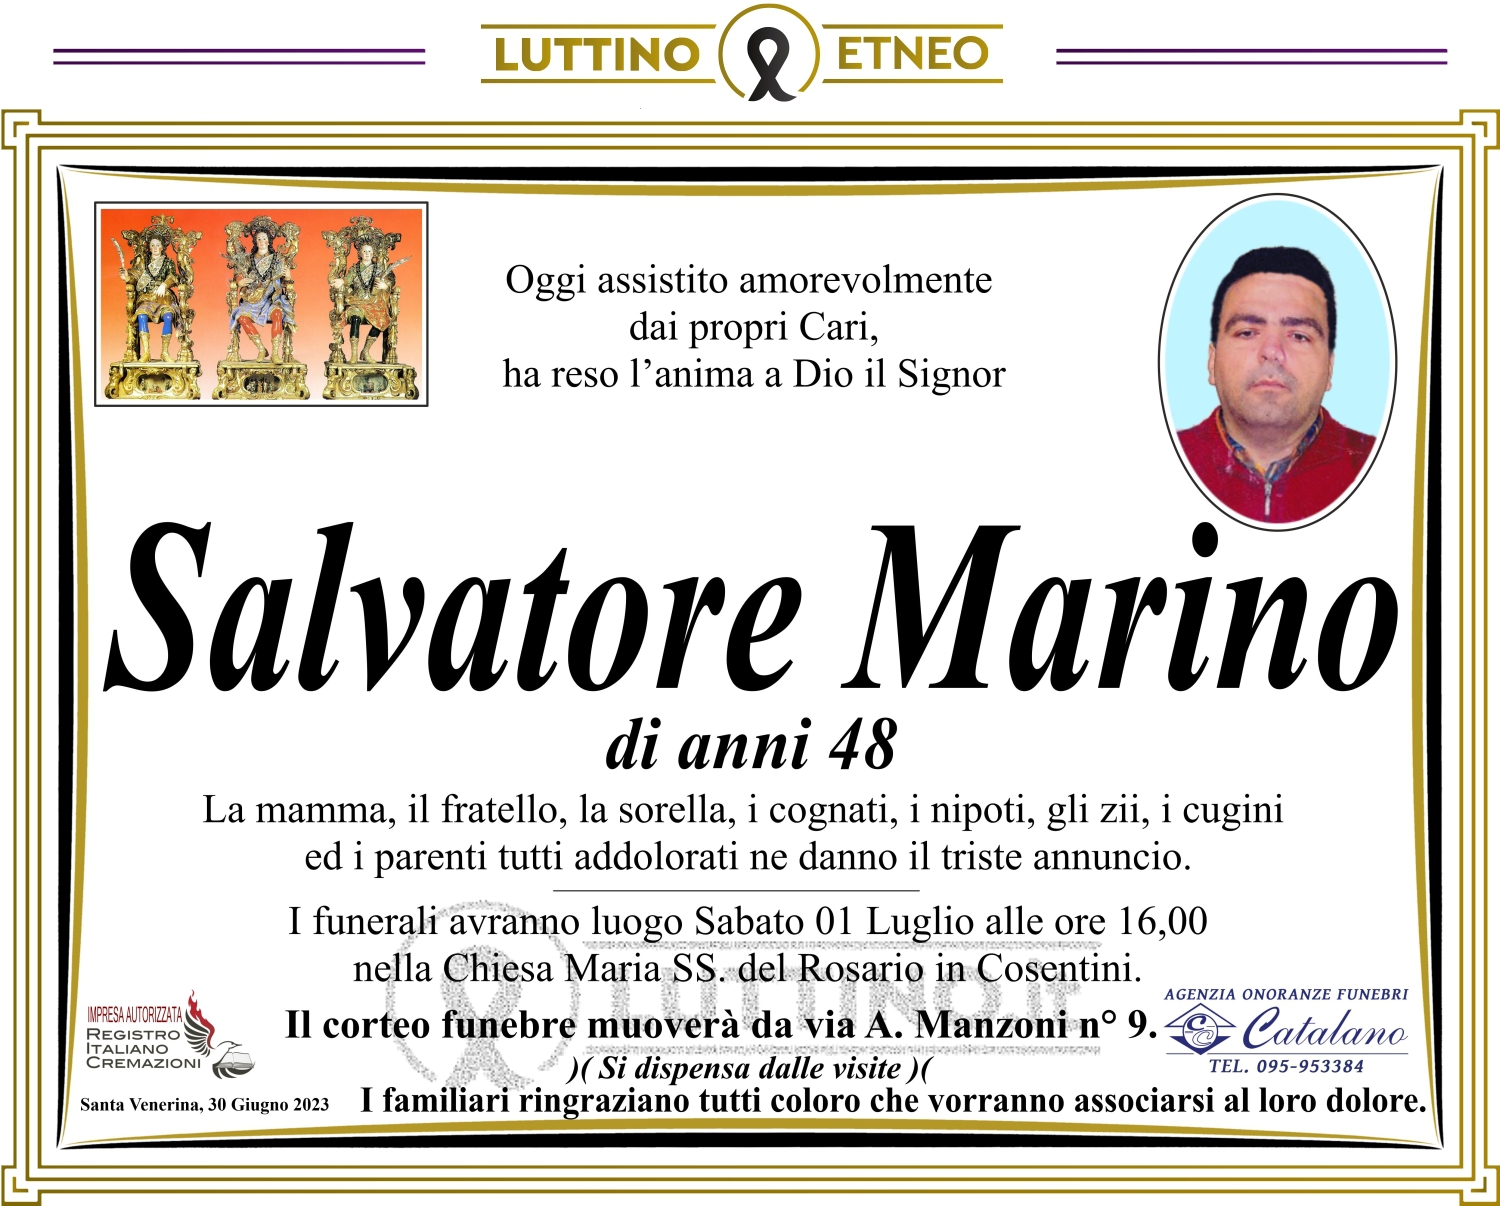 Salvatore Marino